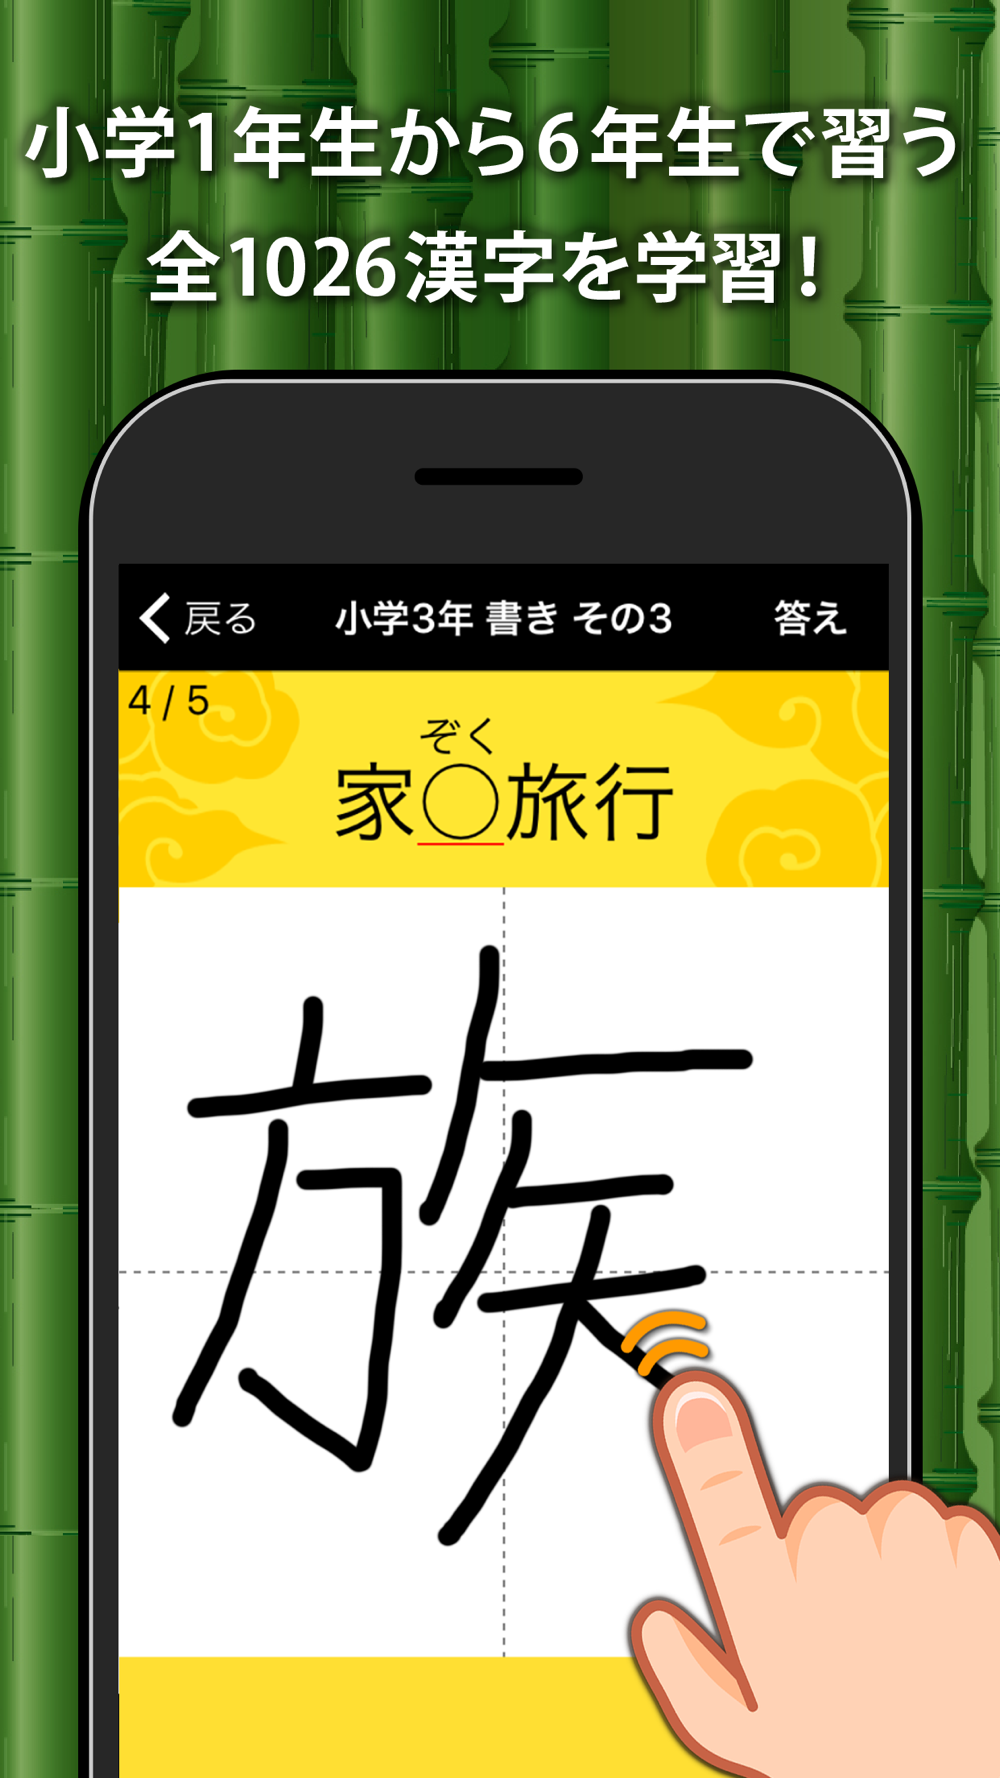 小学生手書き漢字ドリル1026 Free Download App For Iphone Steprimo Com